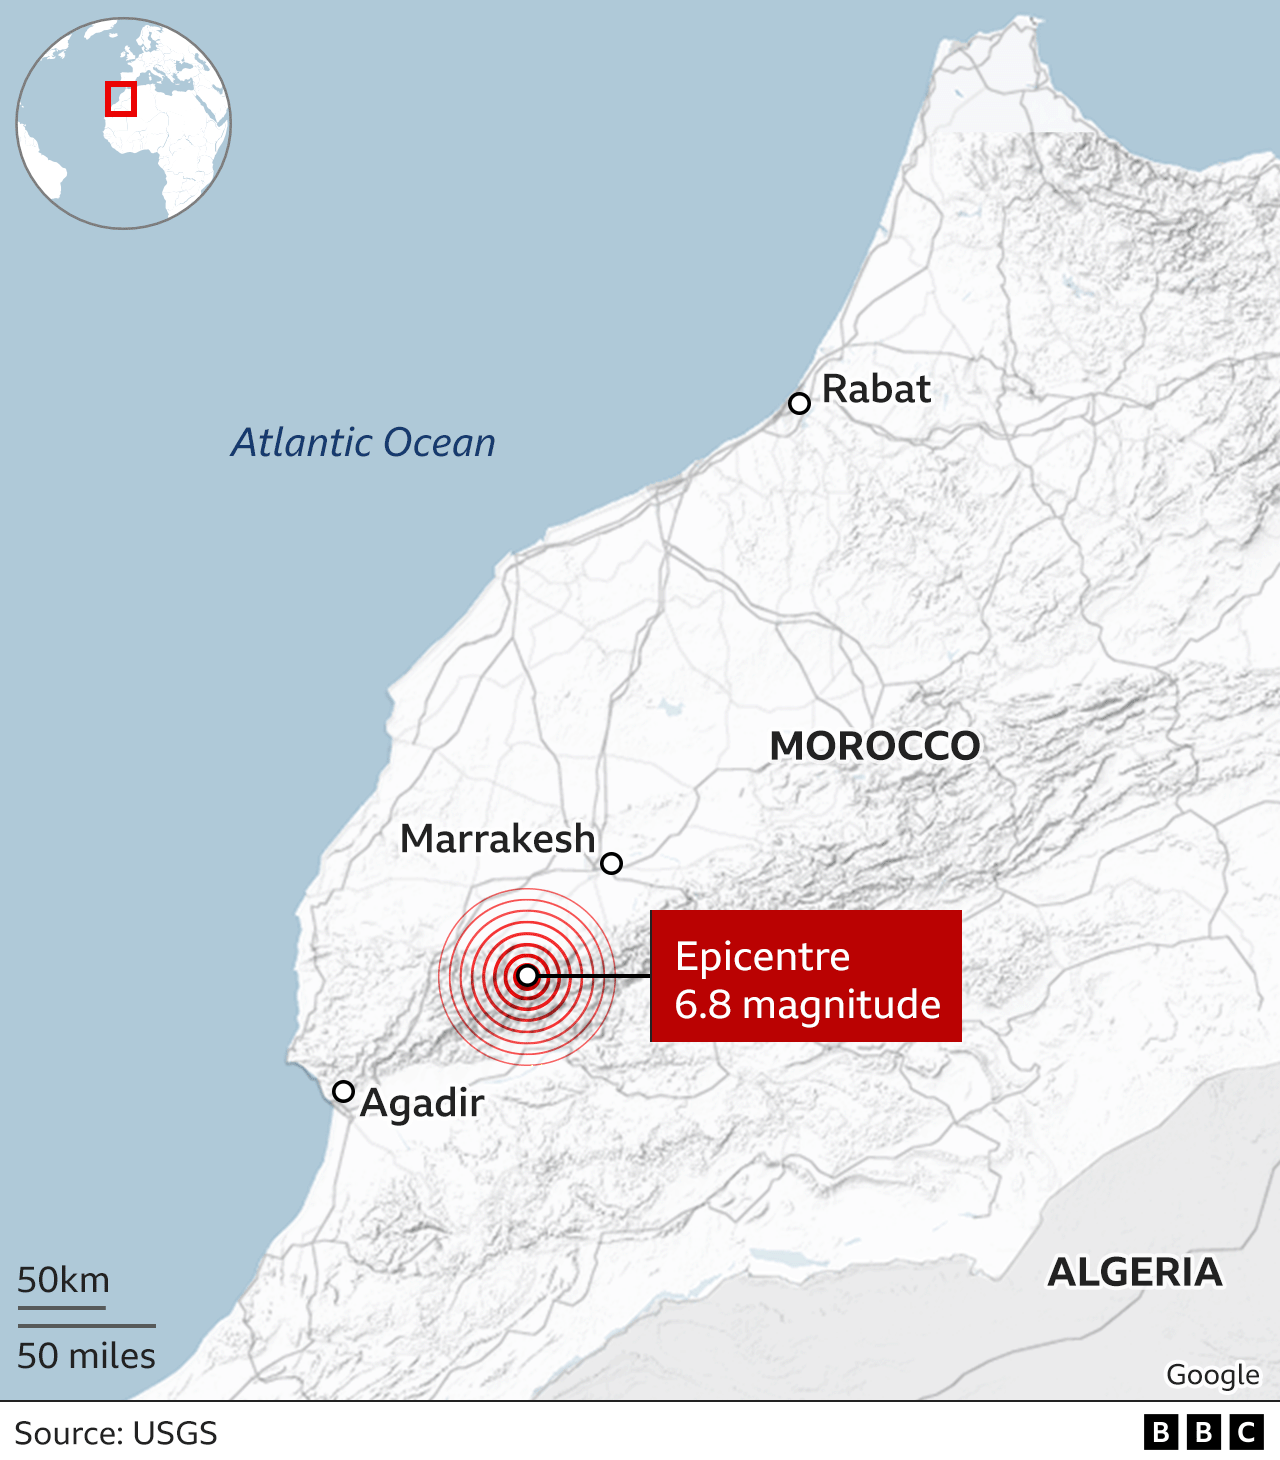 摩洛哥地图显示地震震中，位于马拉喀什和阿加迪尔之间的偏远地区